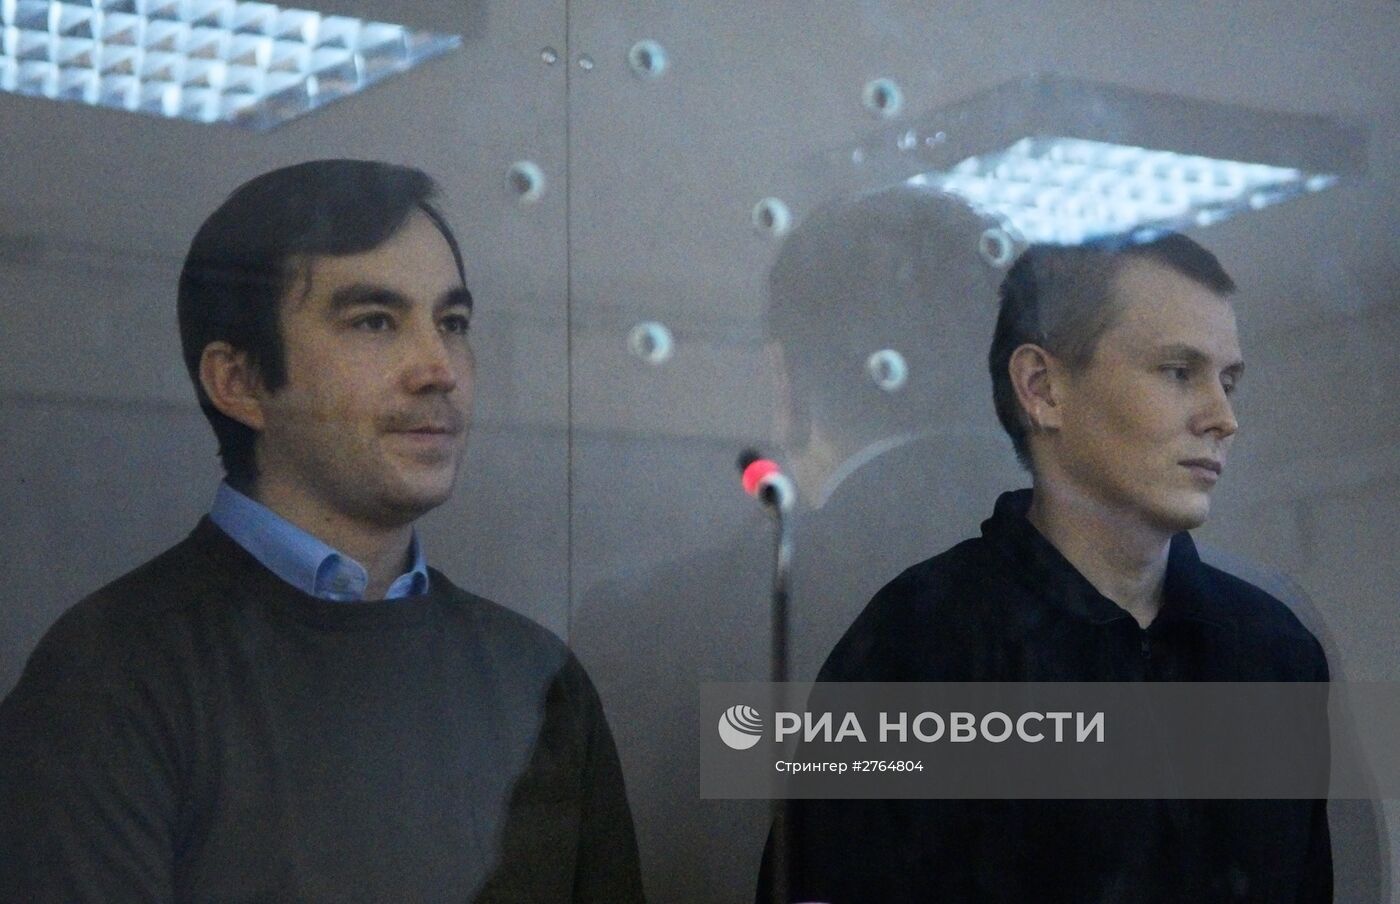 Заседание суда по делу Е. Ерофеева и А. Александрова в Киеве